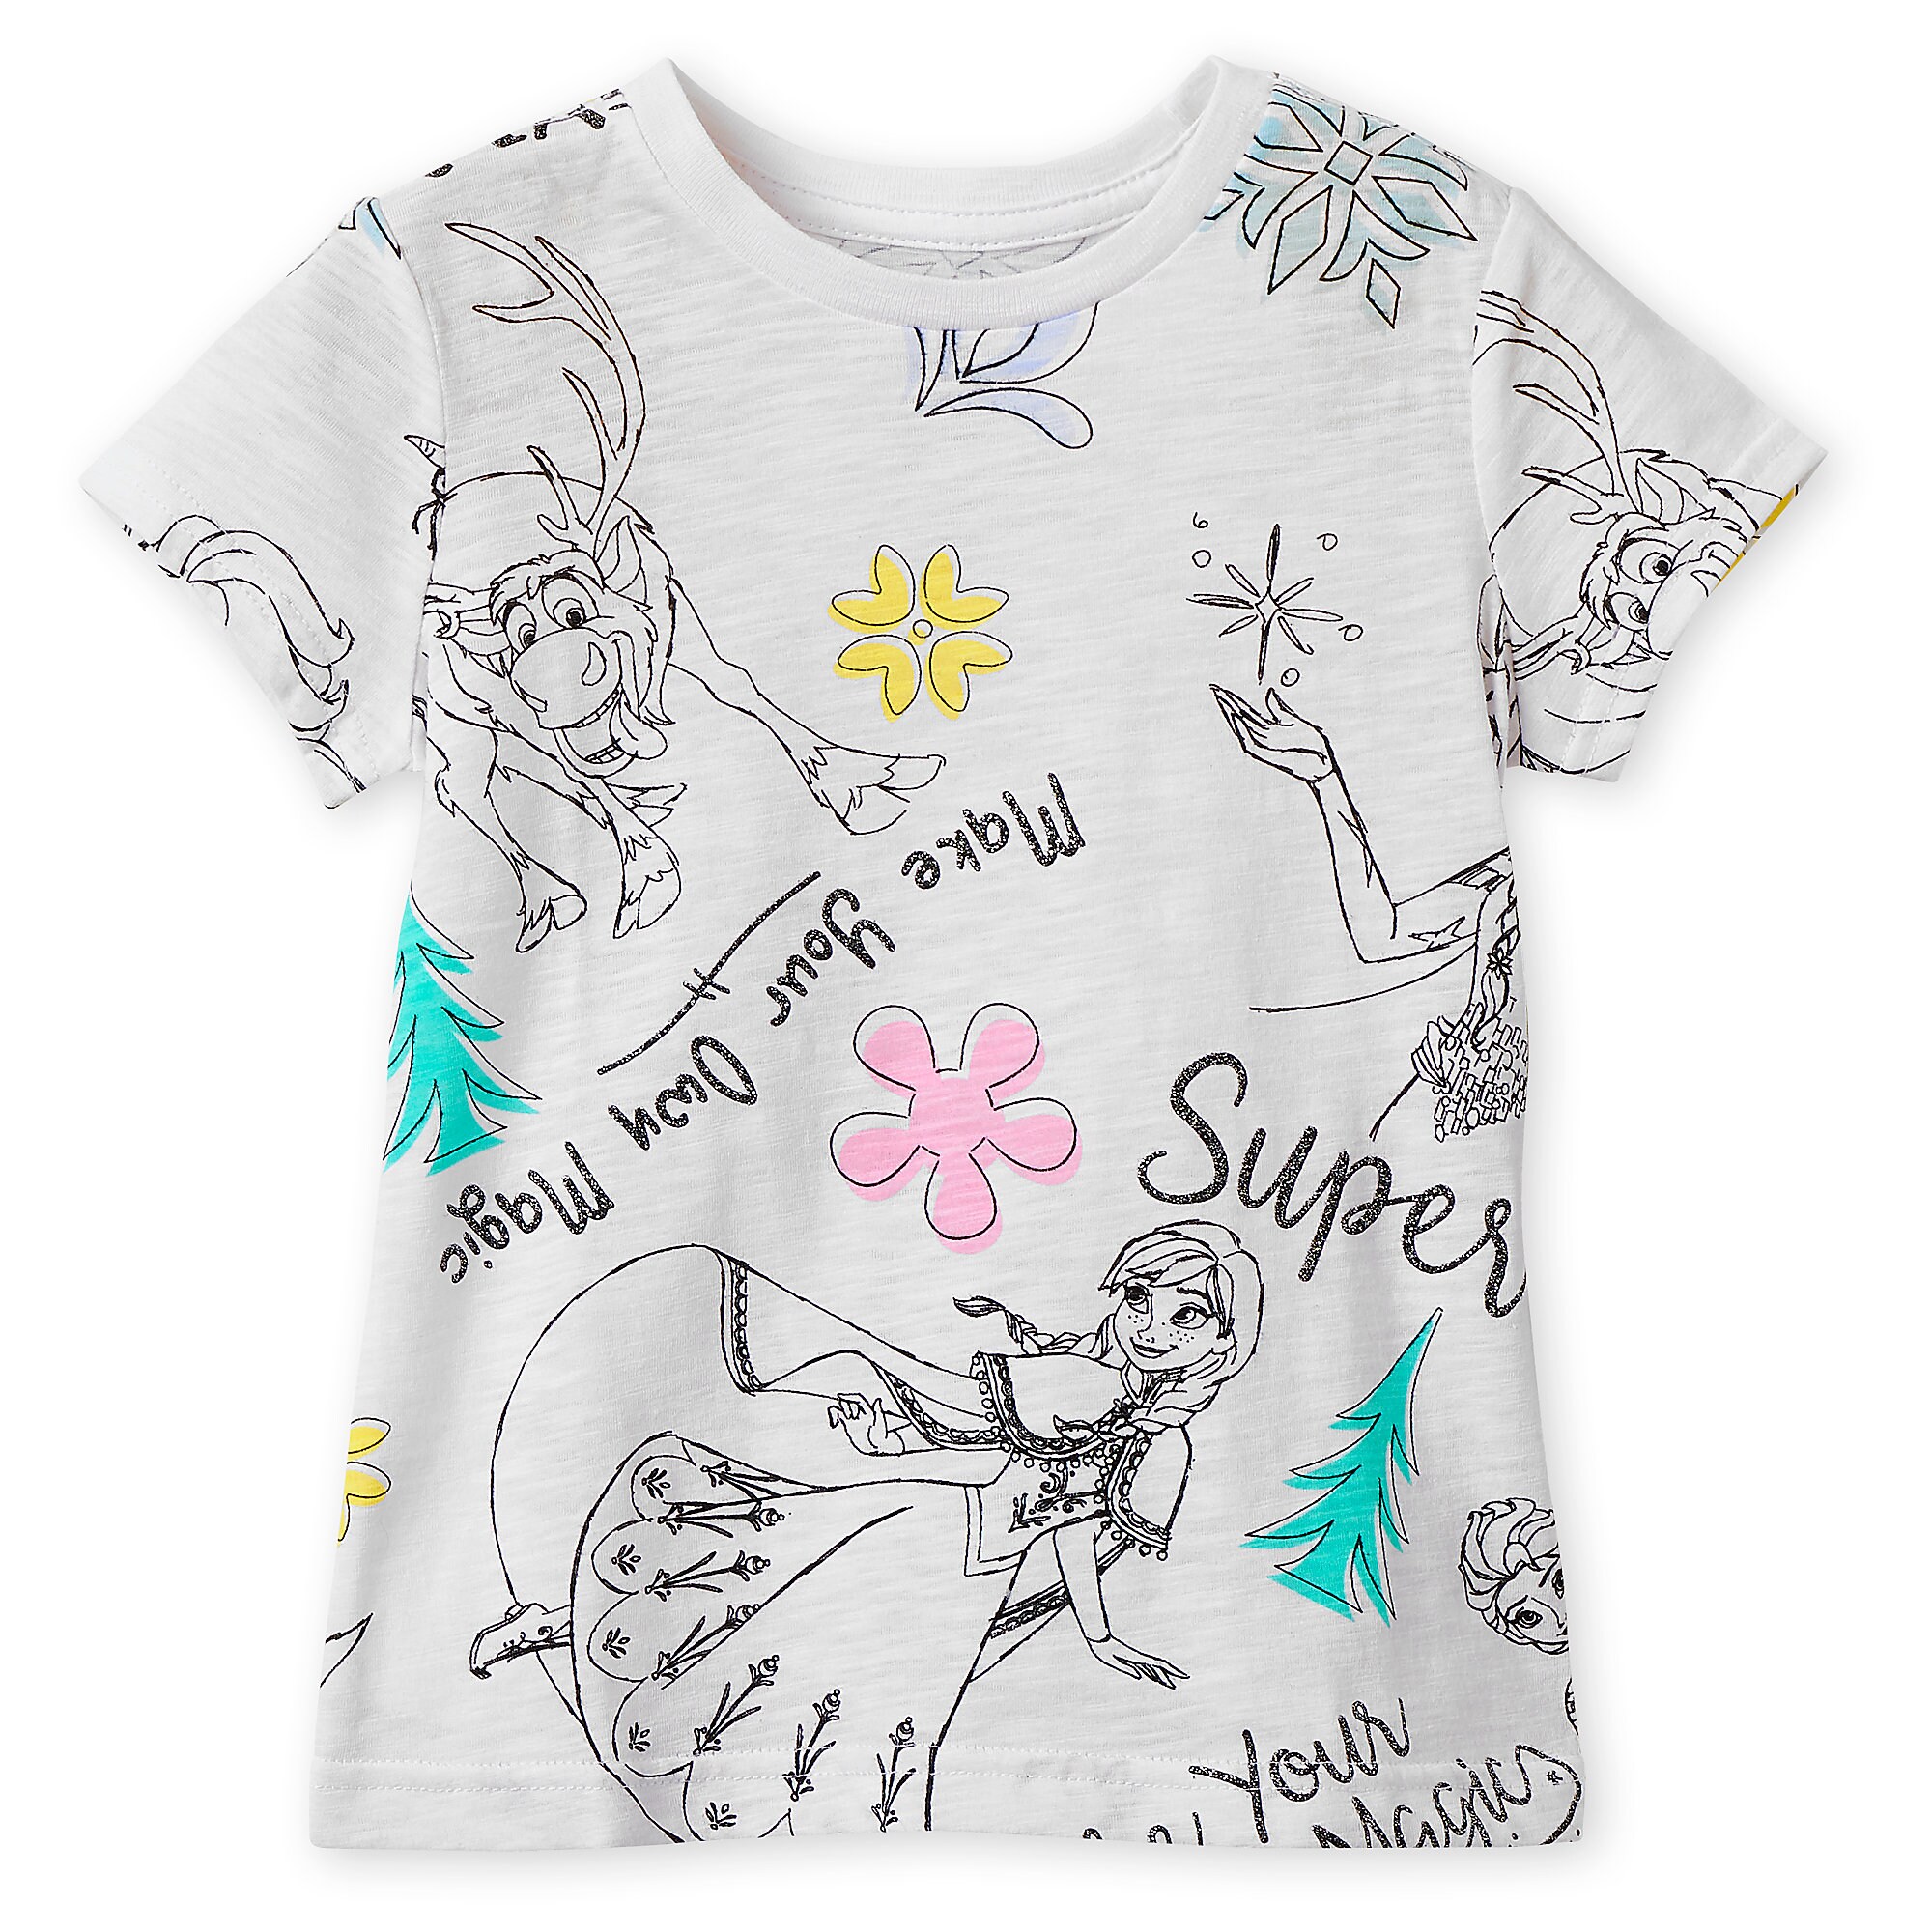 Frozen Sketch Art T-Shirt for Girls